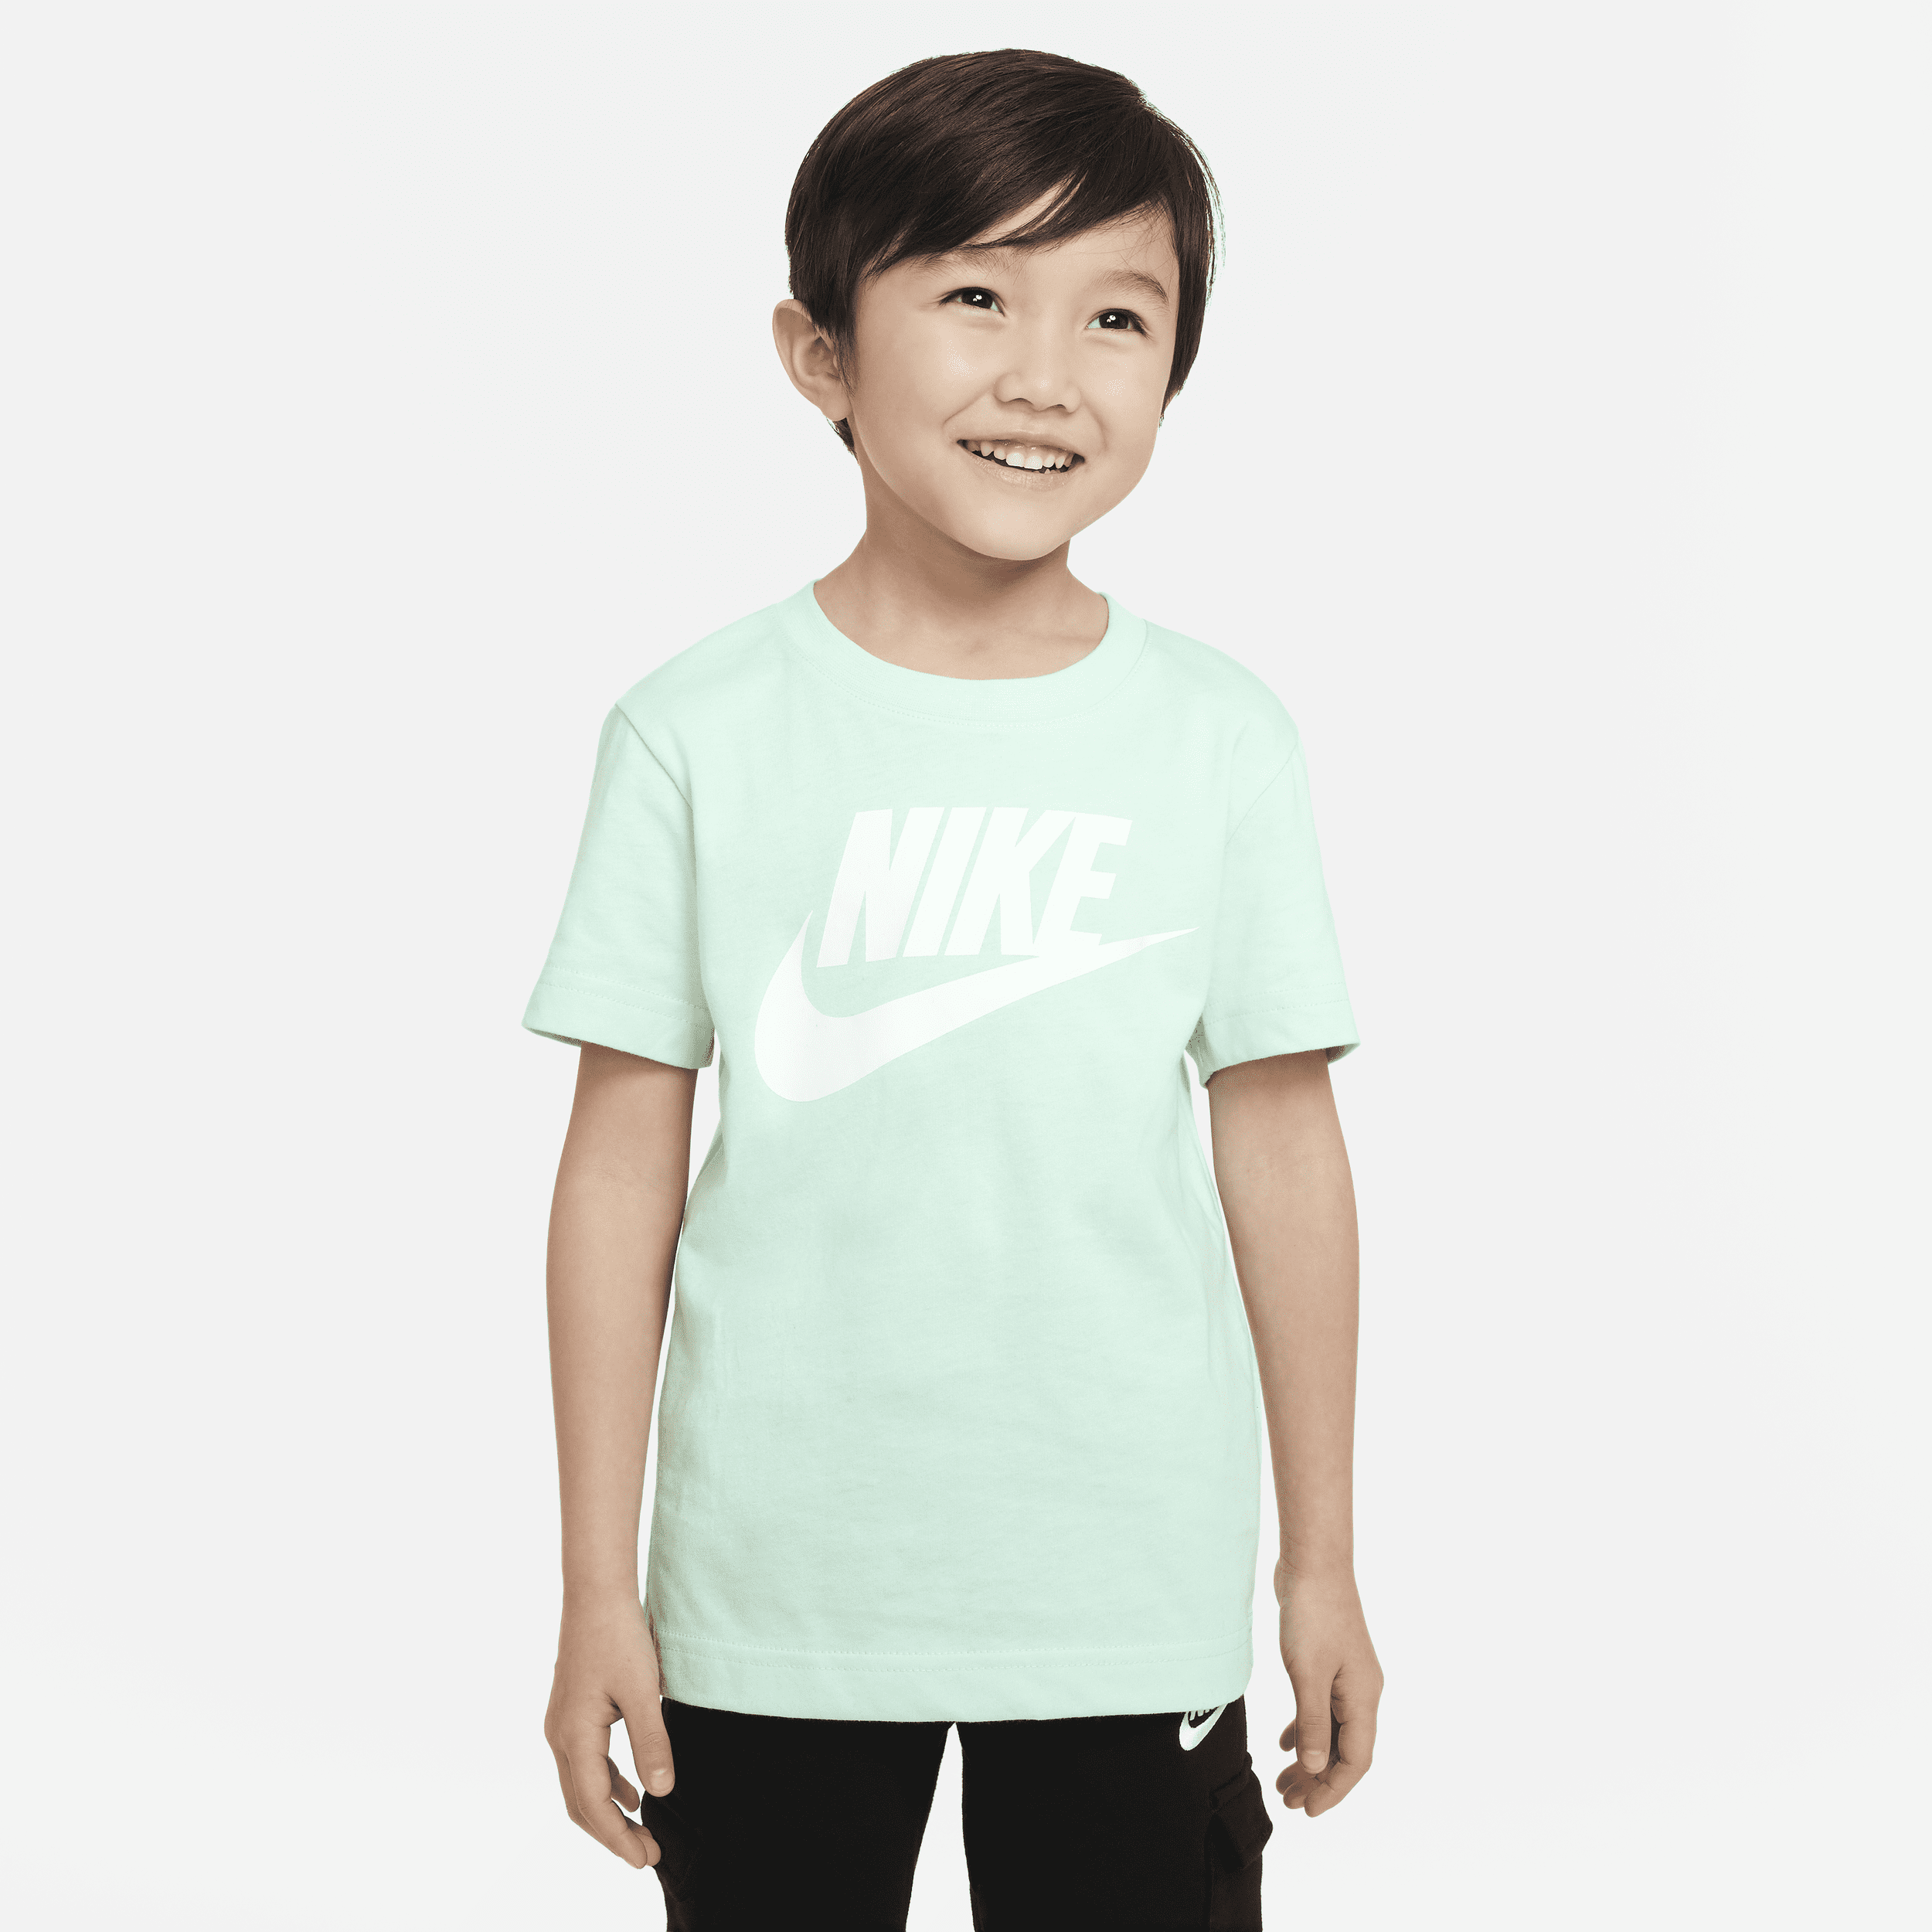 Nike Little Kids' T-shirt In Green